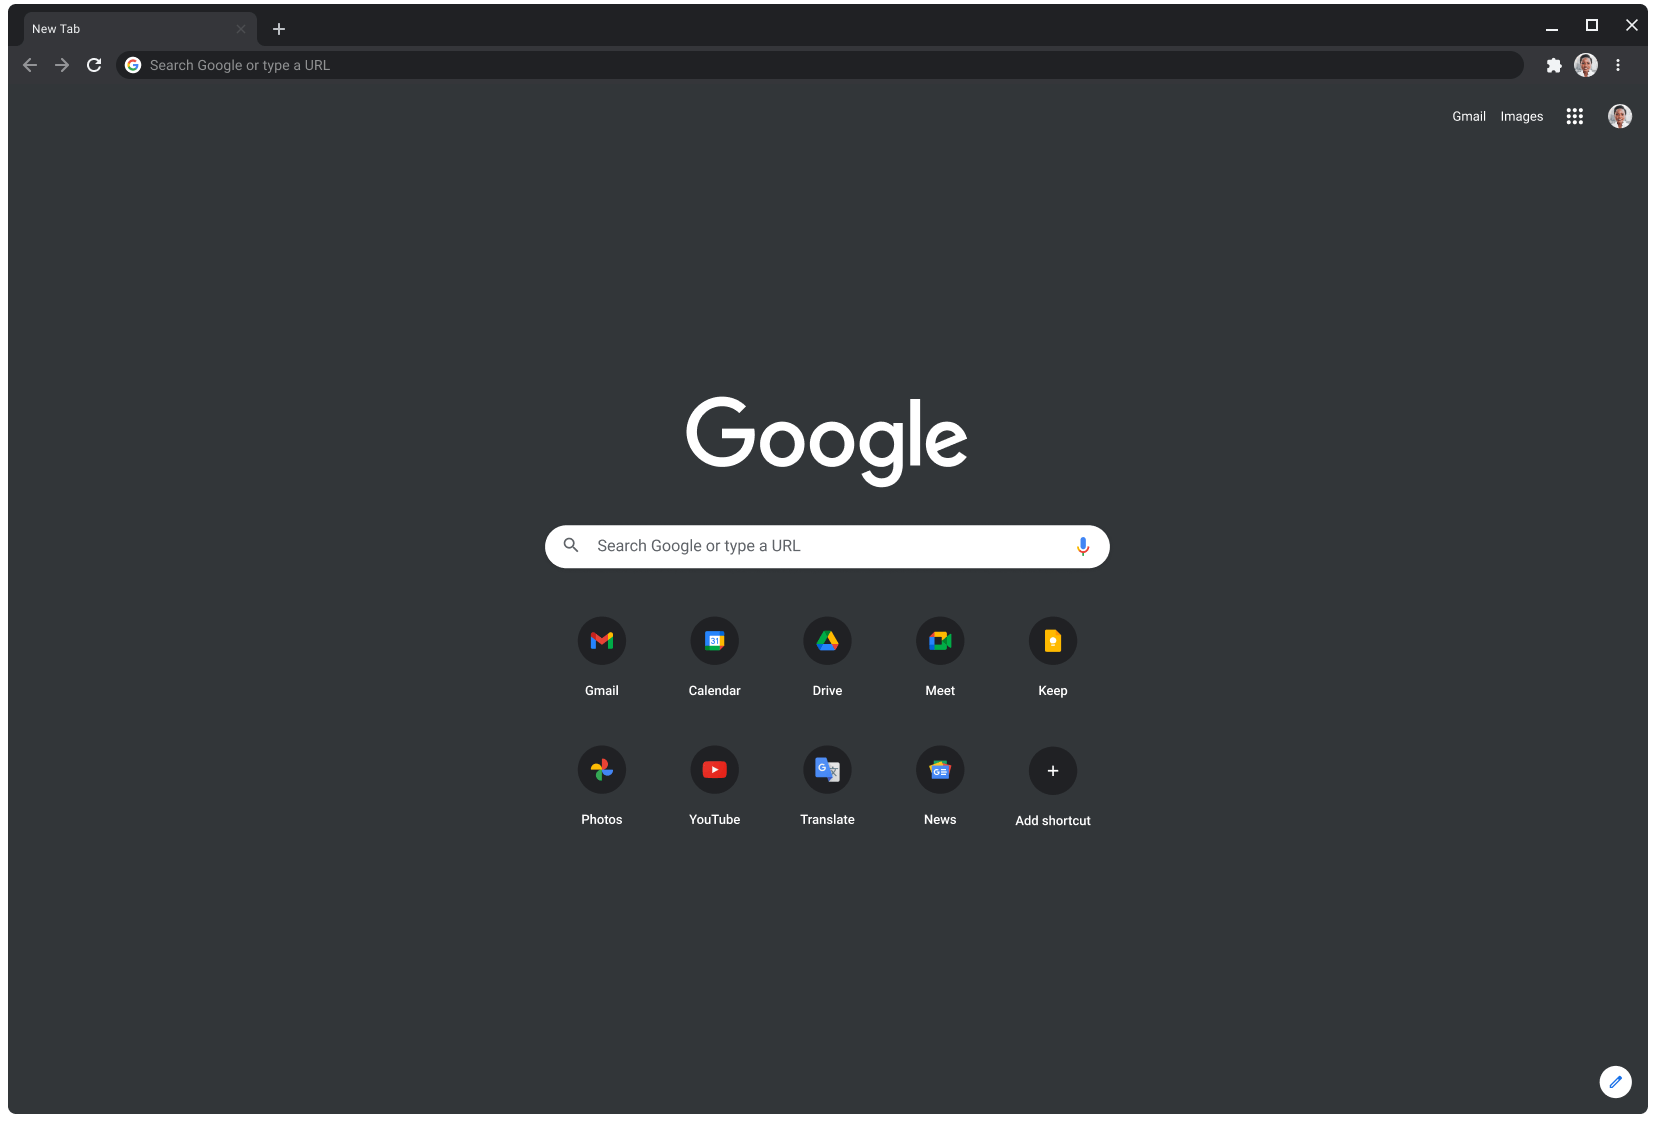 Okno prehliadača Chrome v tmavom režime zobrazujúce Google.com.